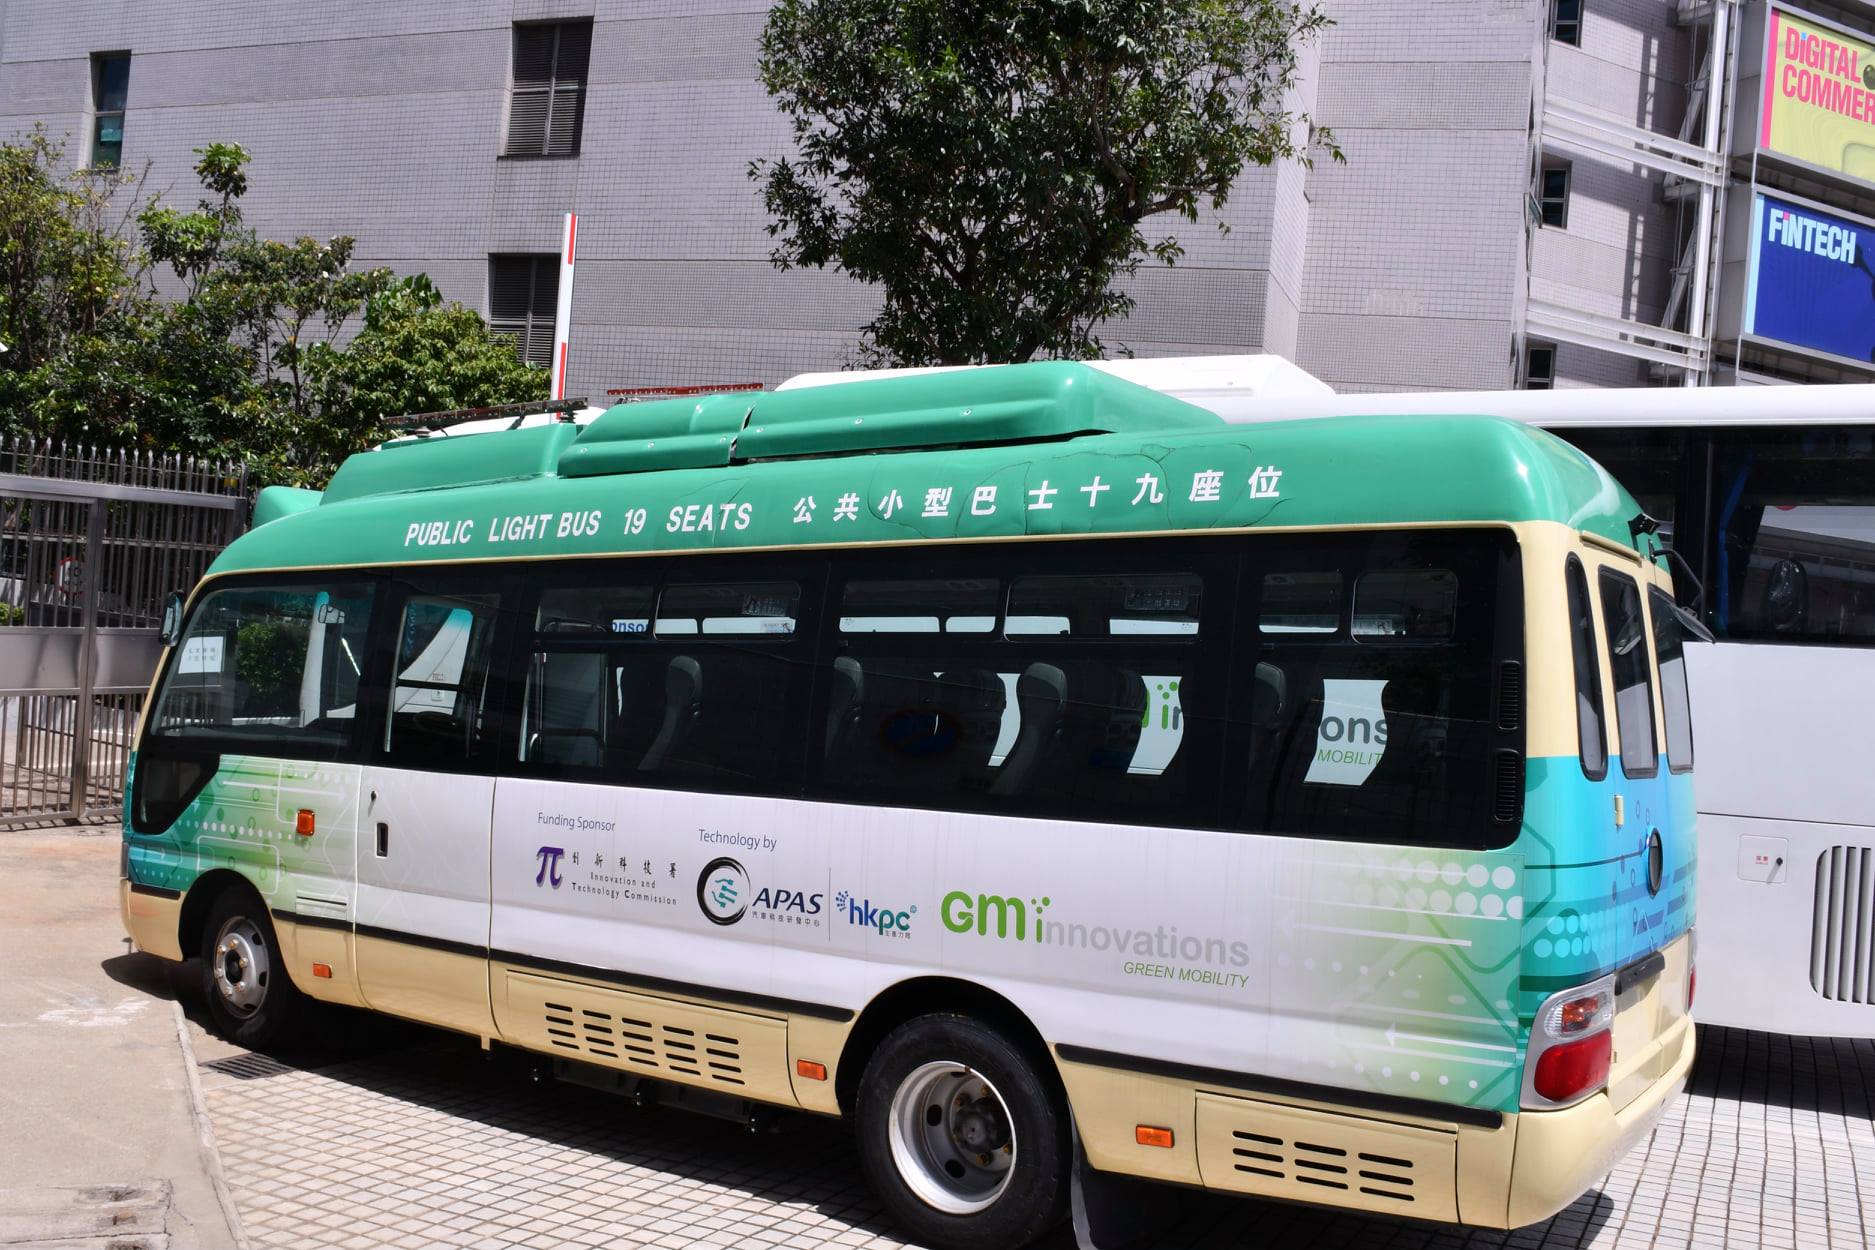 電動公共小巴先導試驗計劃接受申請 政府提供八成車價資助